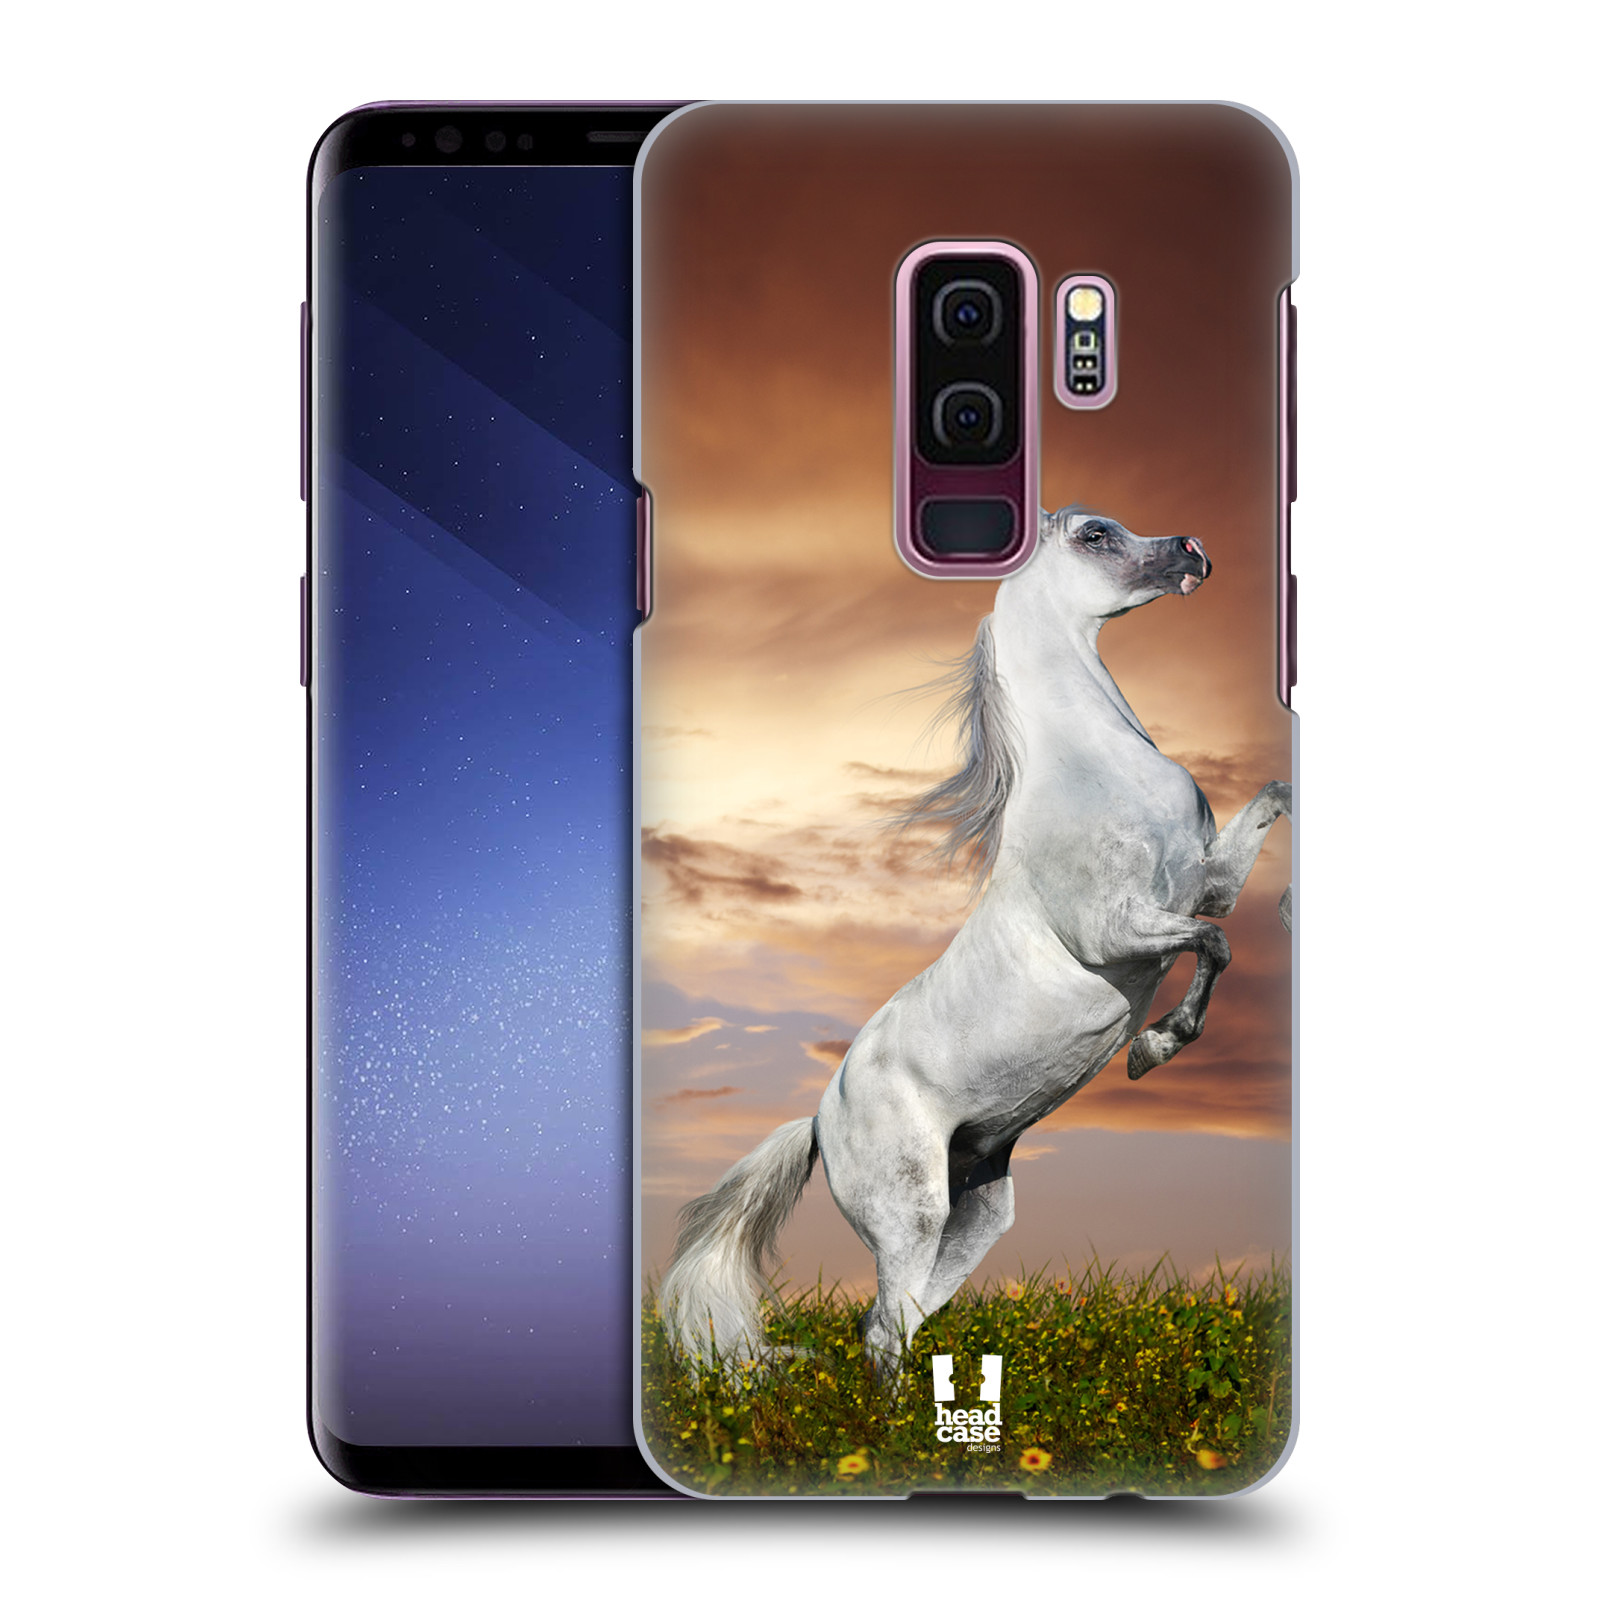 Zadní obal pro mobil Samsung Galaxy S9 PLUS - HEAD CASE - Svět zvířat divoký kůň